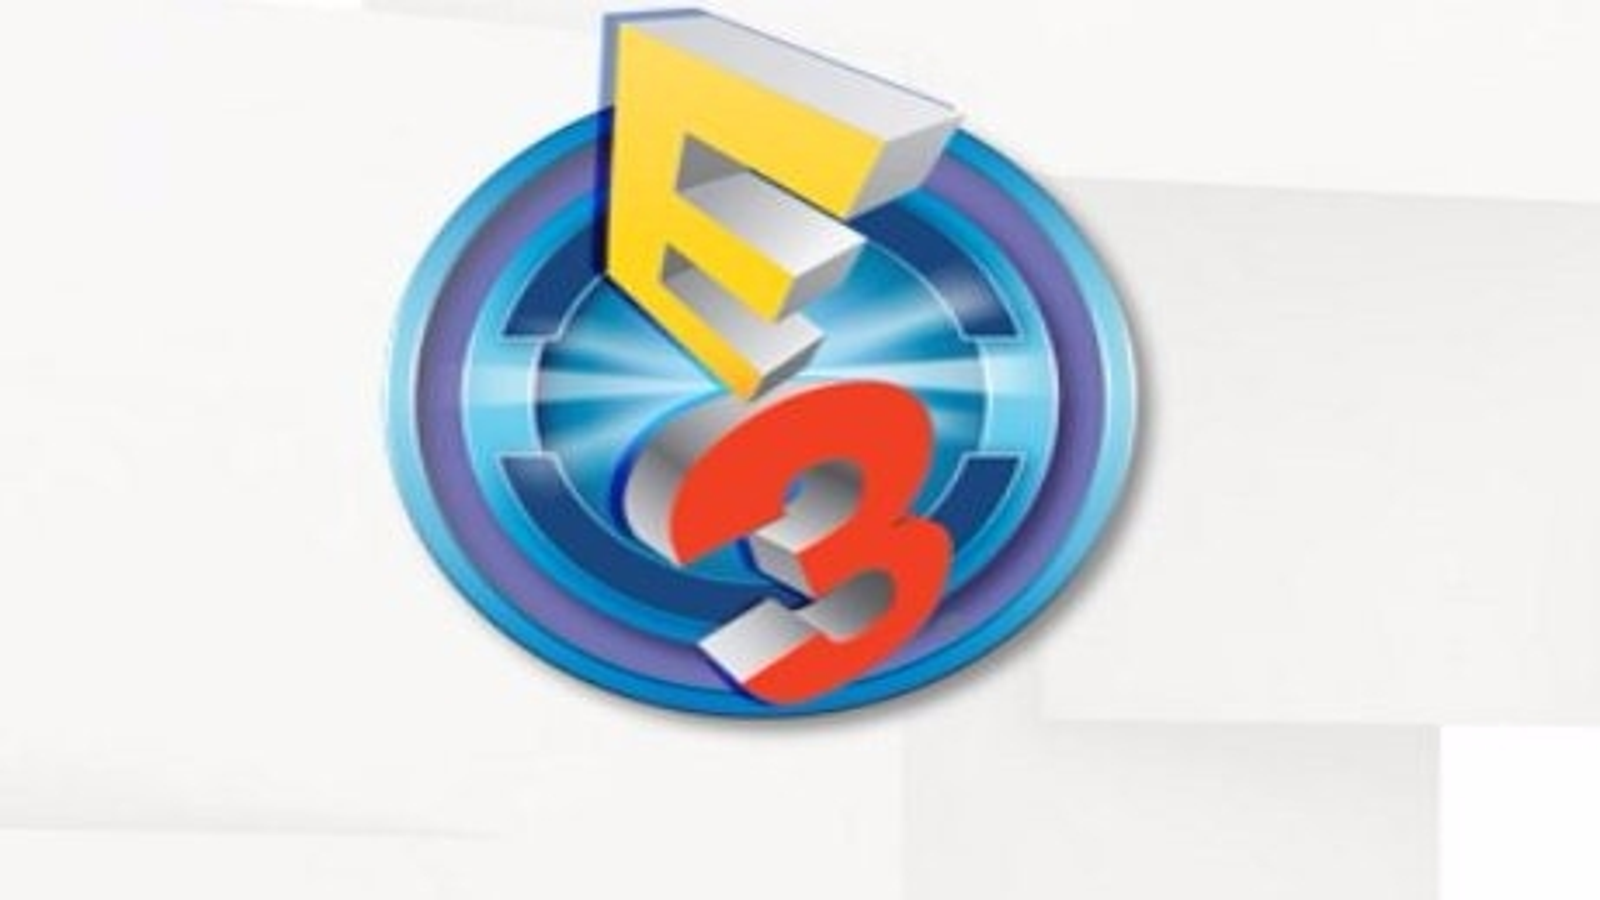 7 gameplays de jogos japoneses exibidos na E3 2016